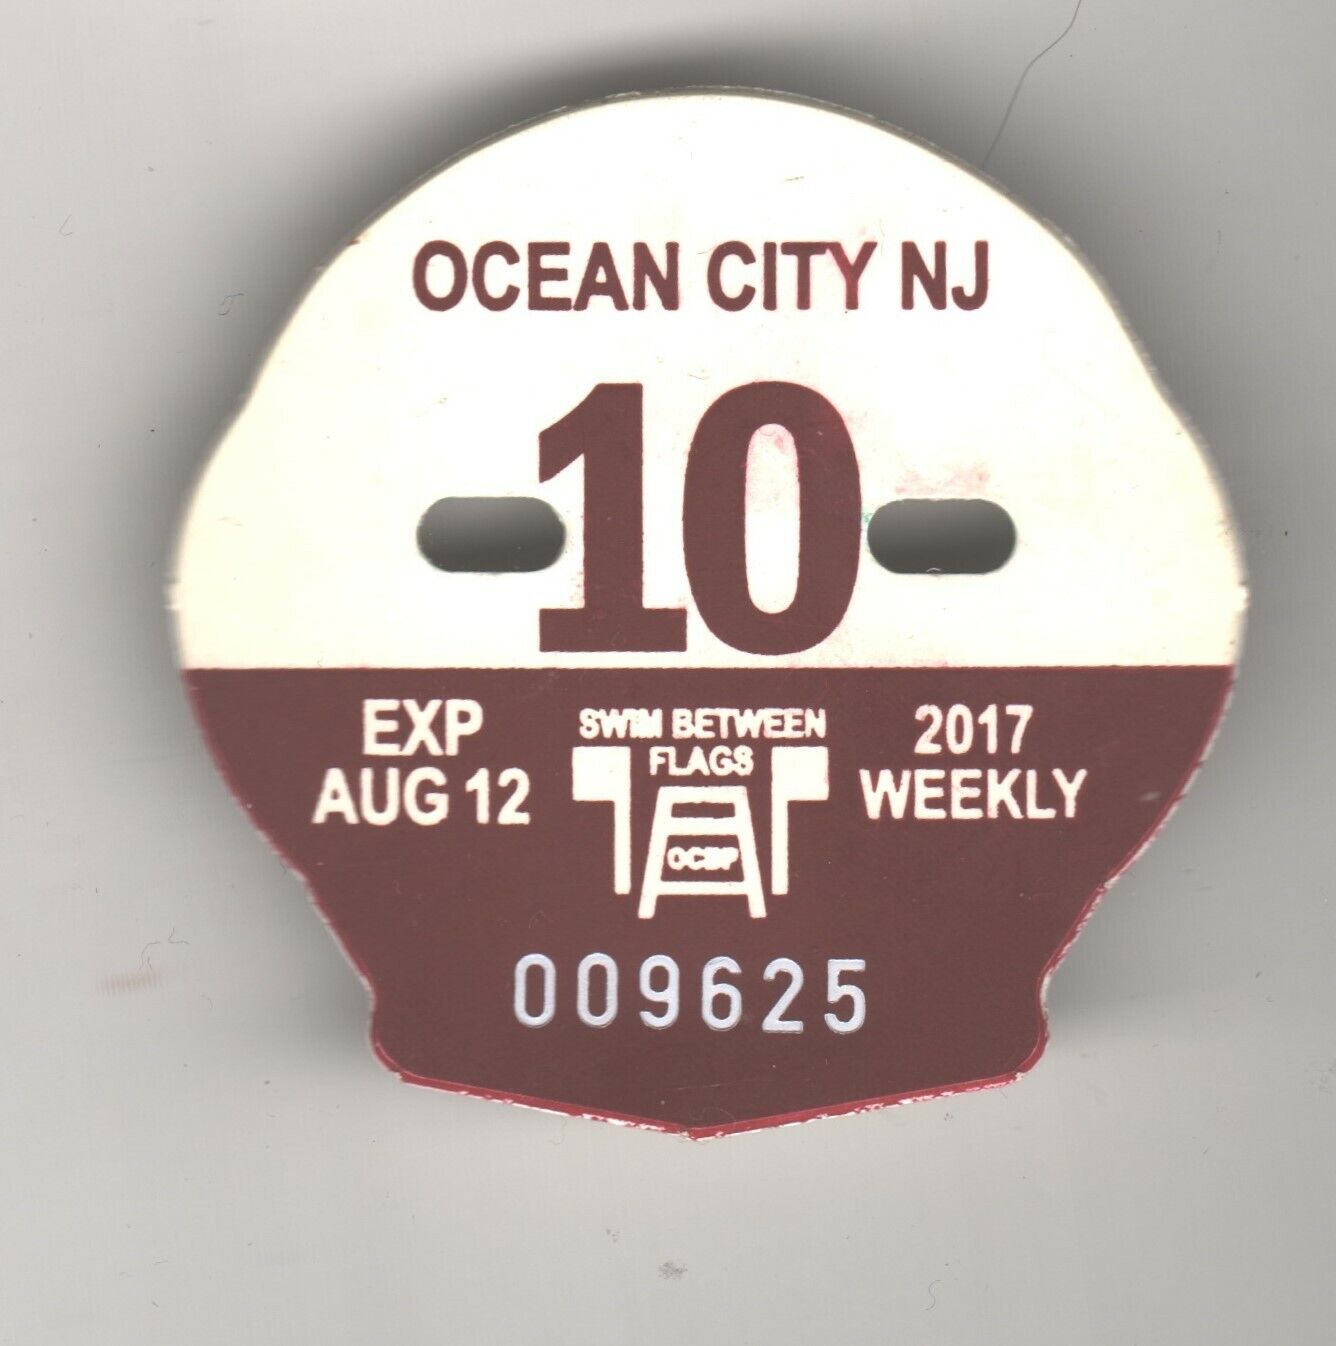 2017 OCEAN CITY NJ BEACH BADGE / TAG WEEK 10 AUGUST 12